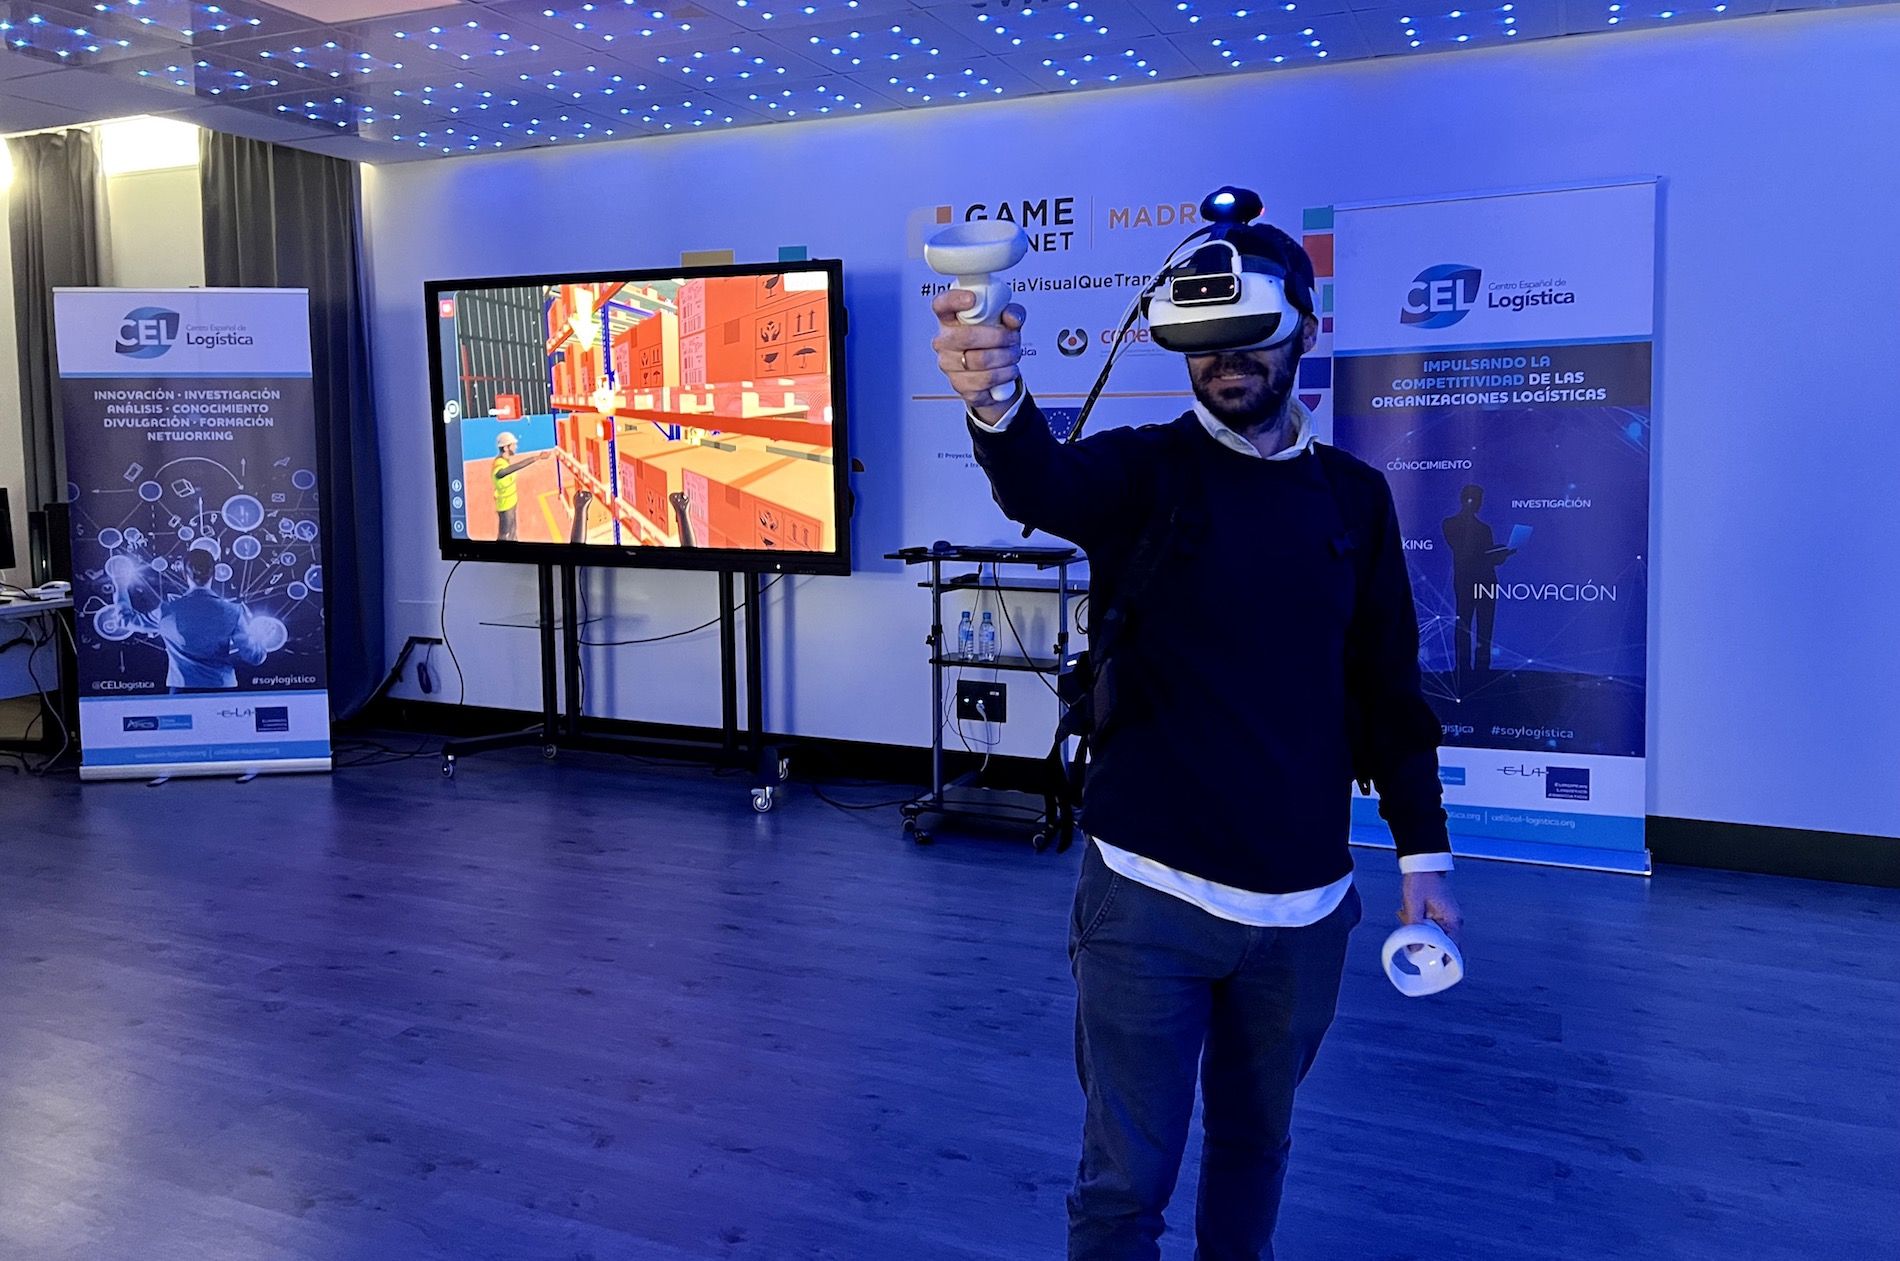 Se ha llevado a cabo una demostración en el laboratorio de realidad virtual inmersiva GameLab Madrid.